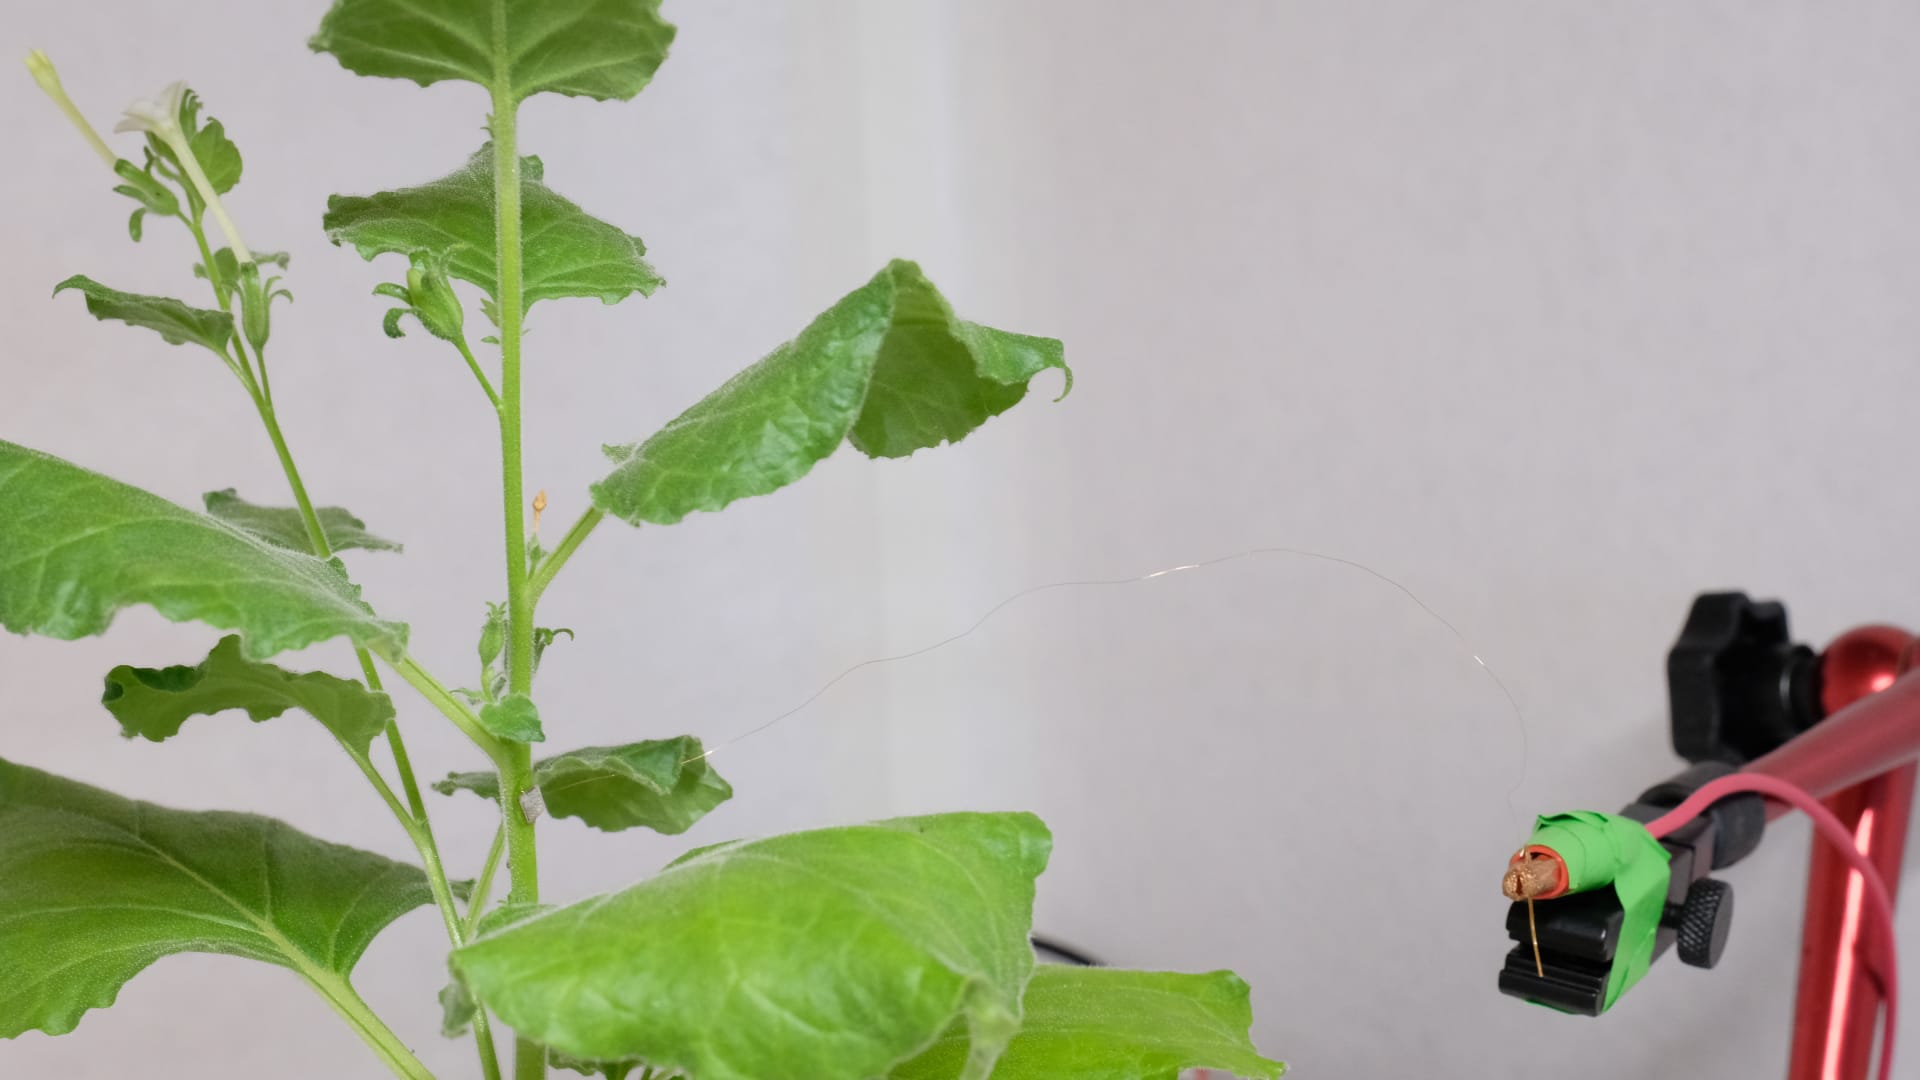 باحثون من سنغافورة يطورون أداة يمكنها "التواصل" مع النباتات..كيف؟ 